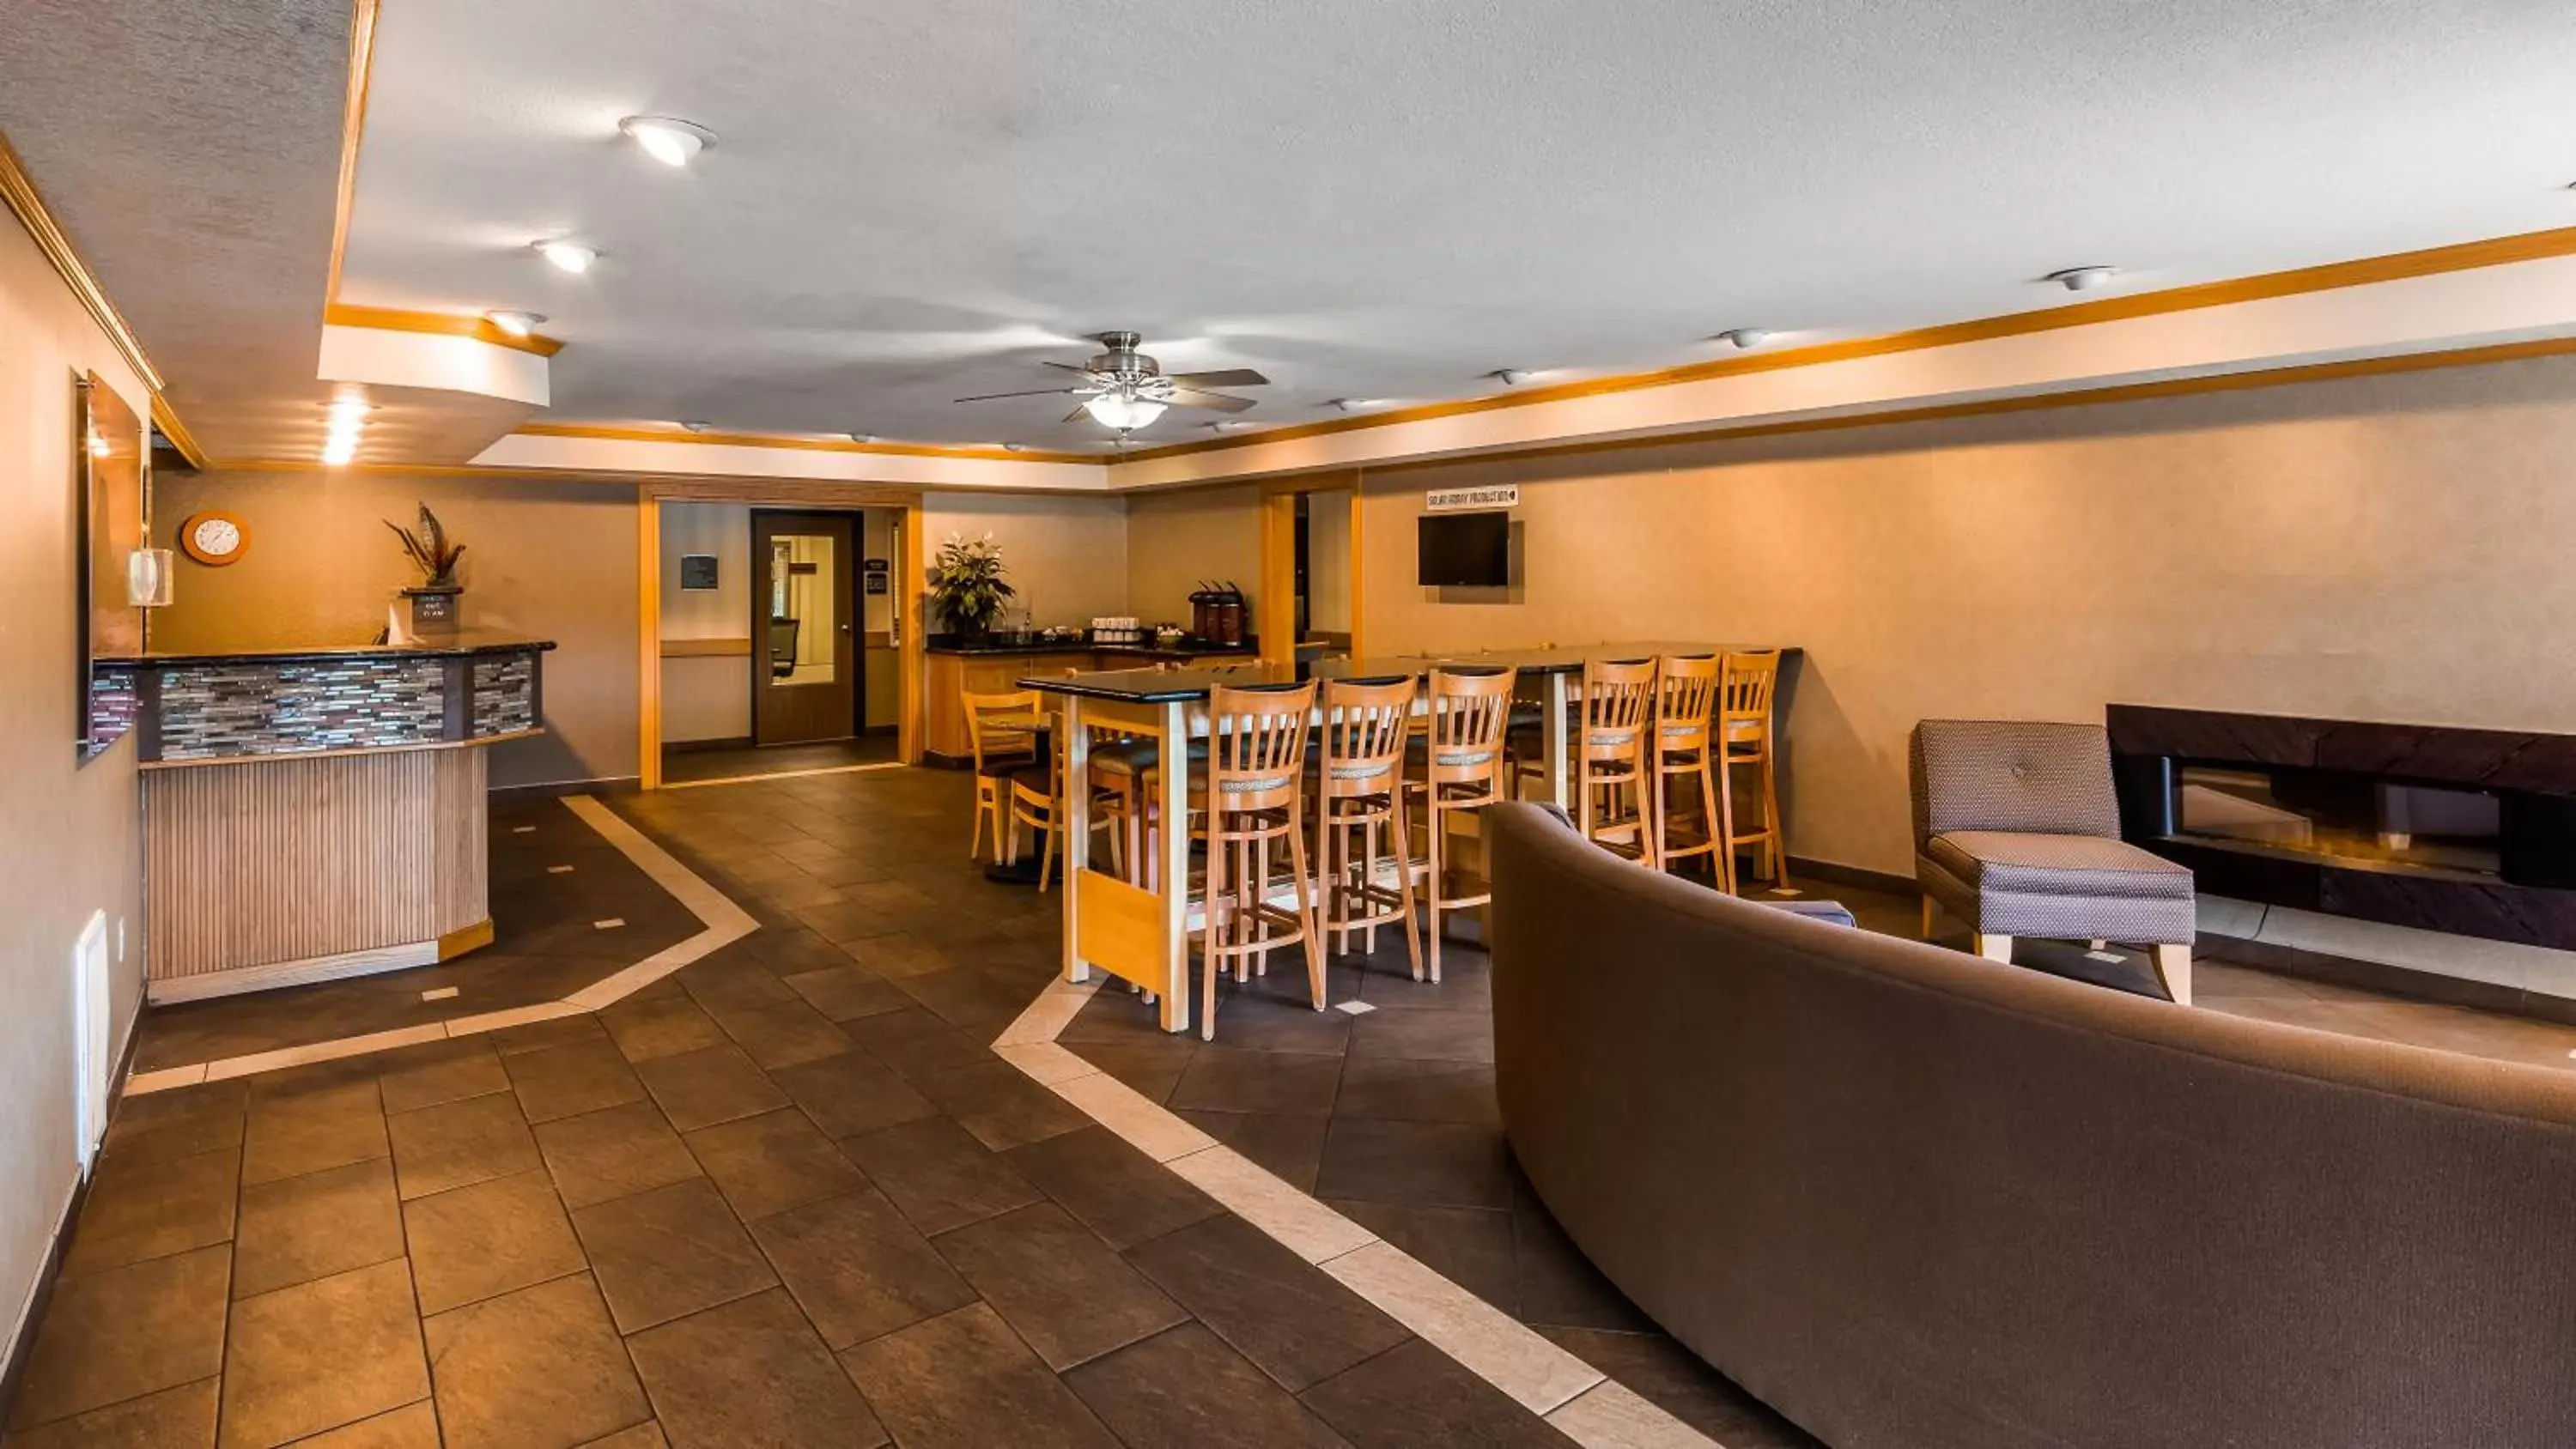 Lobby or reception, Lobby/Reception in Best Western Plus Landmark Inn